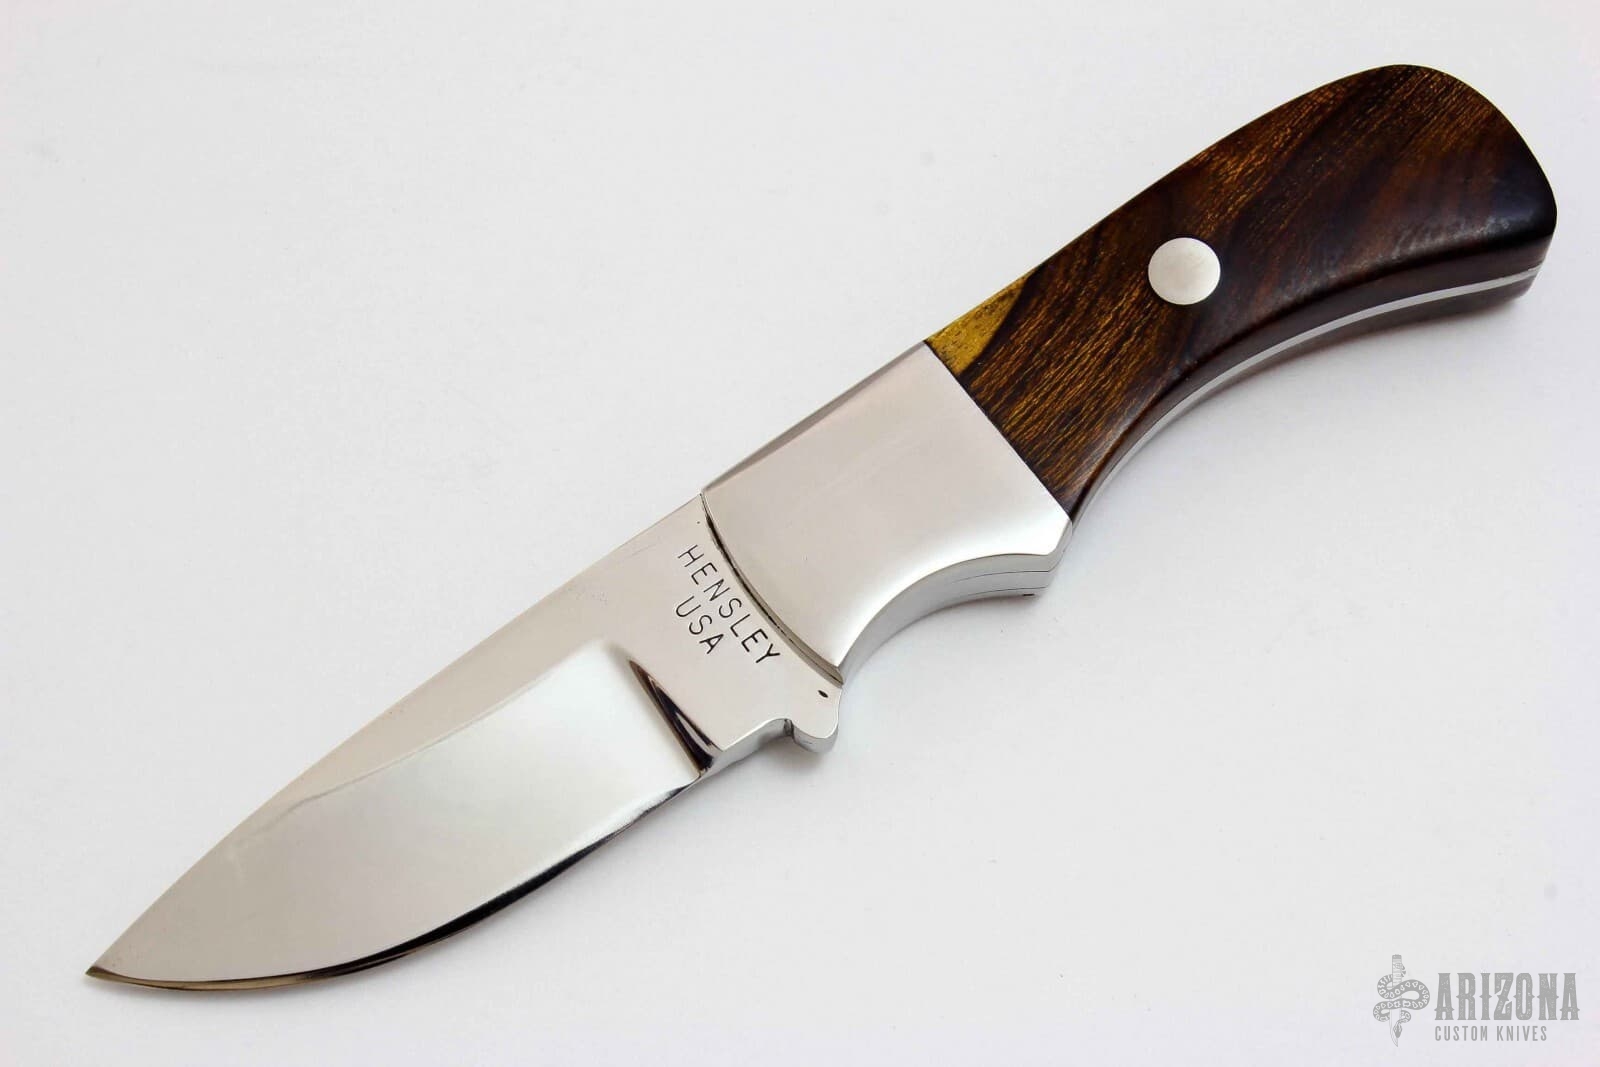 SD-3 | Arizona Custom Knives